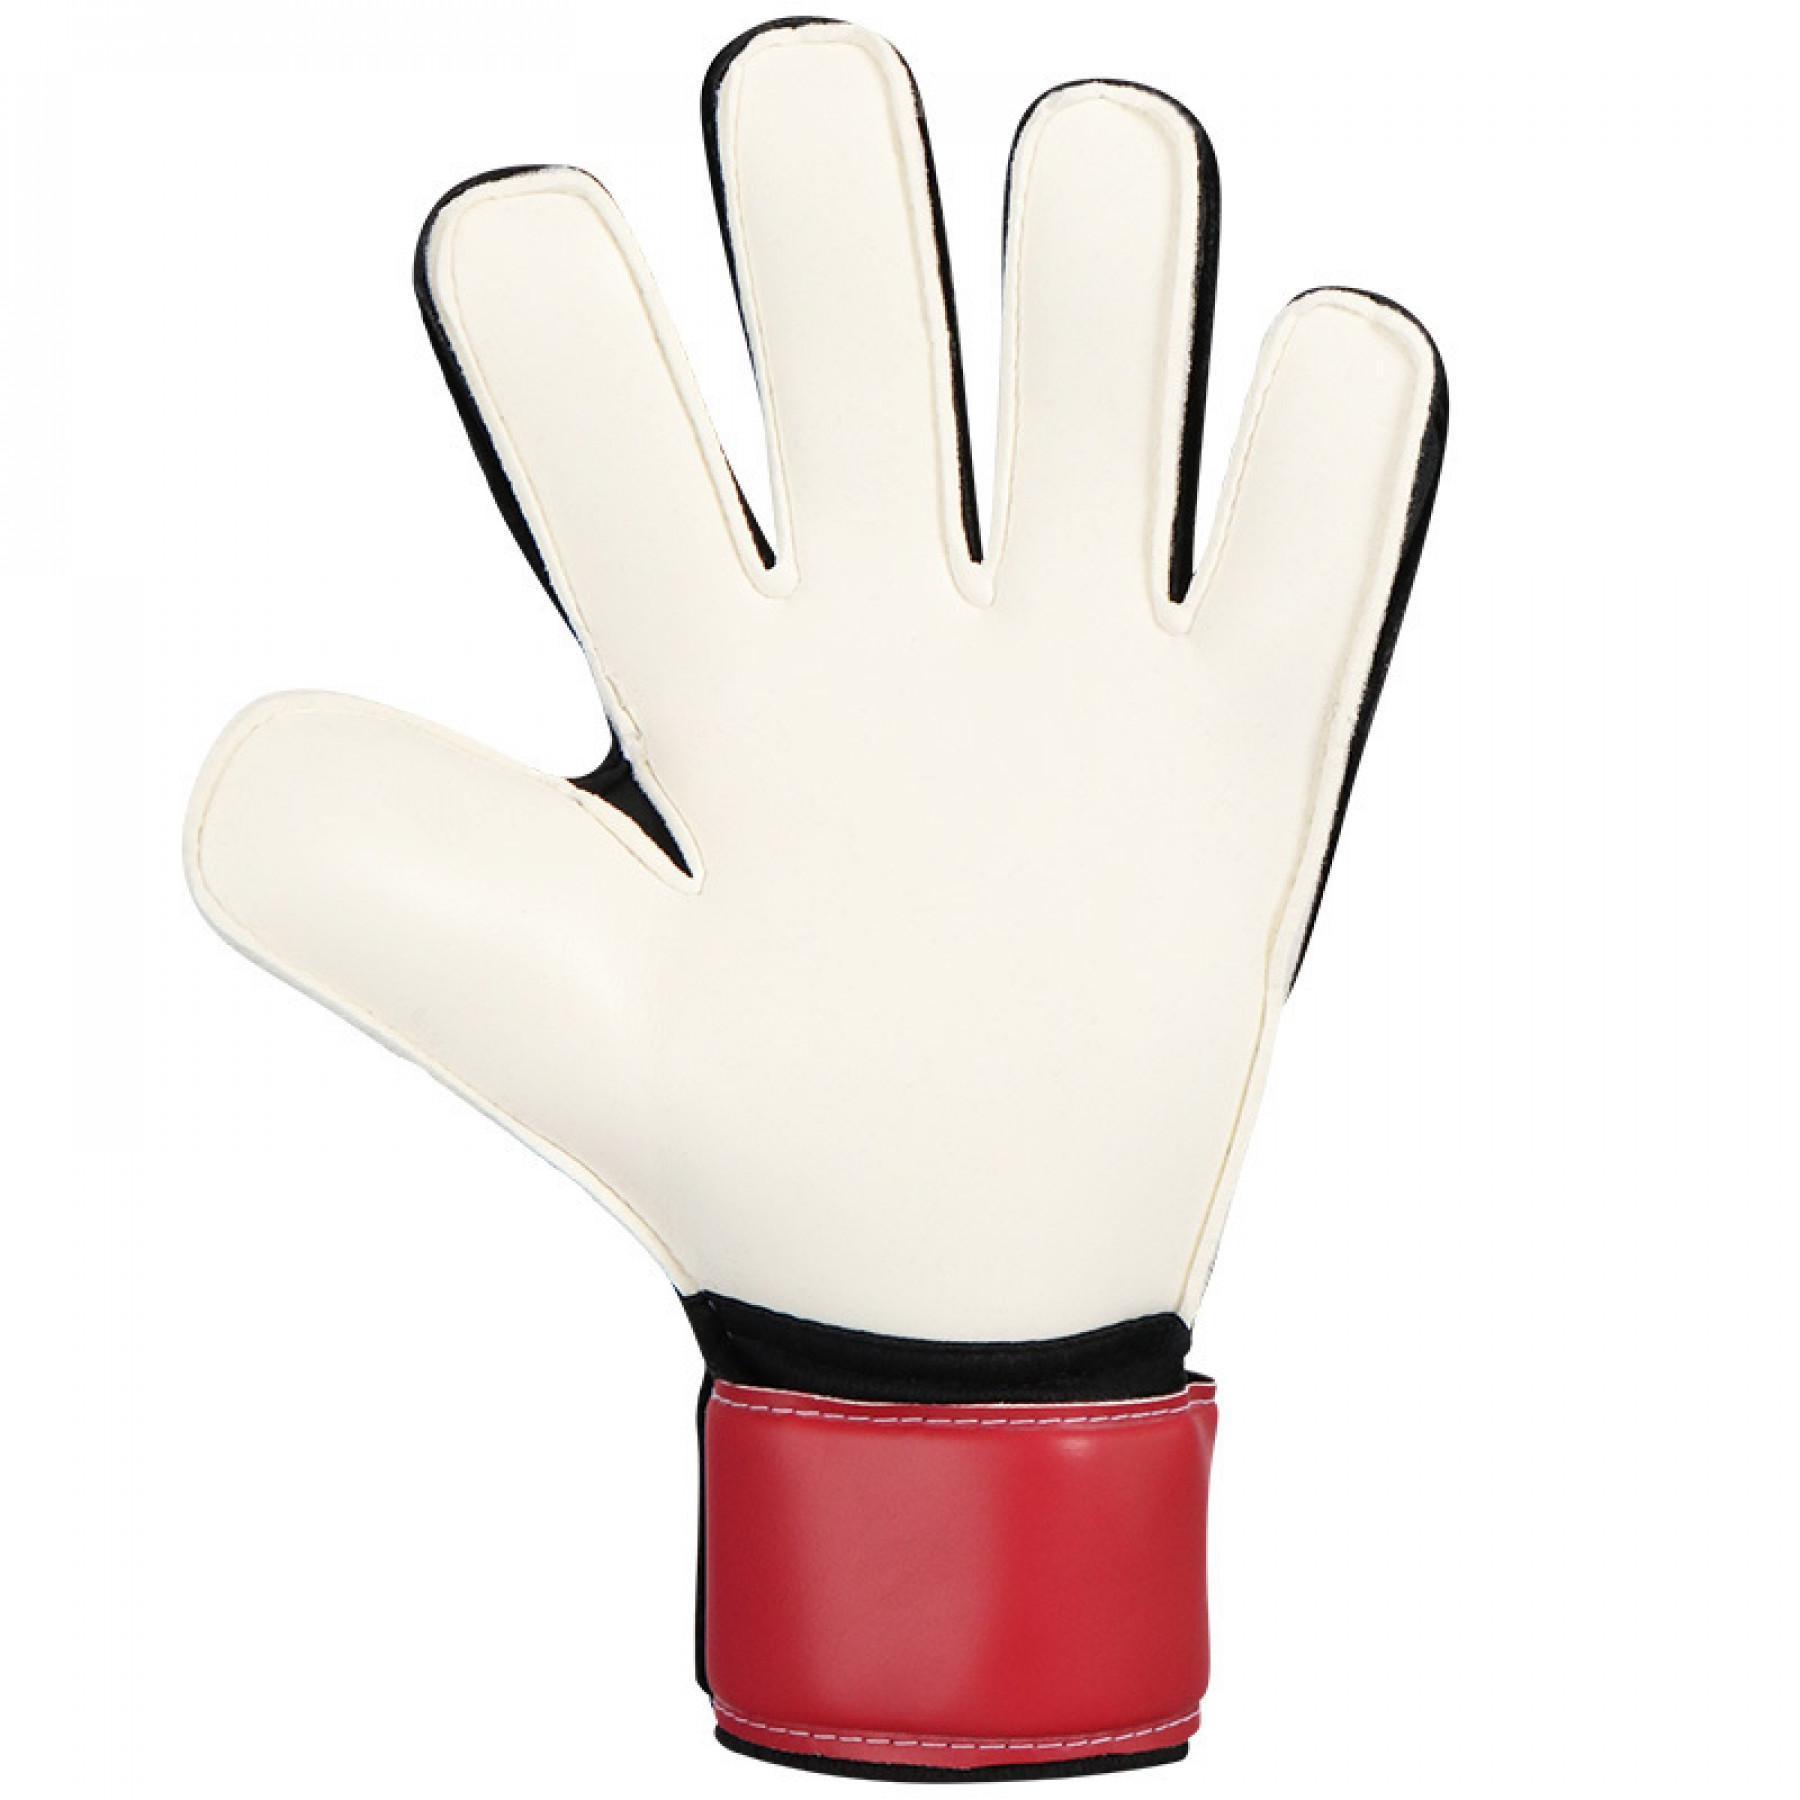 Goalkeeper's gloves VfB Stuttgart